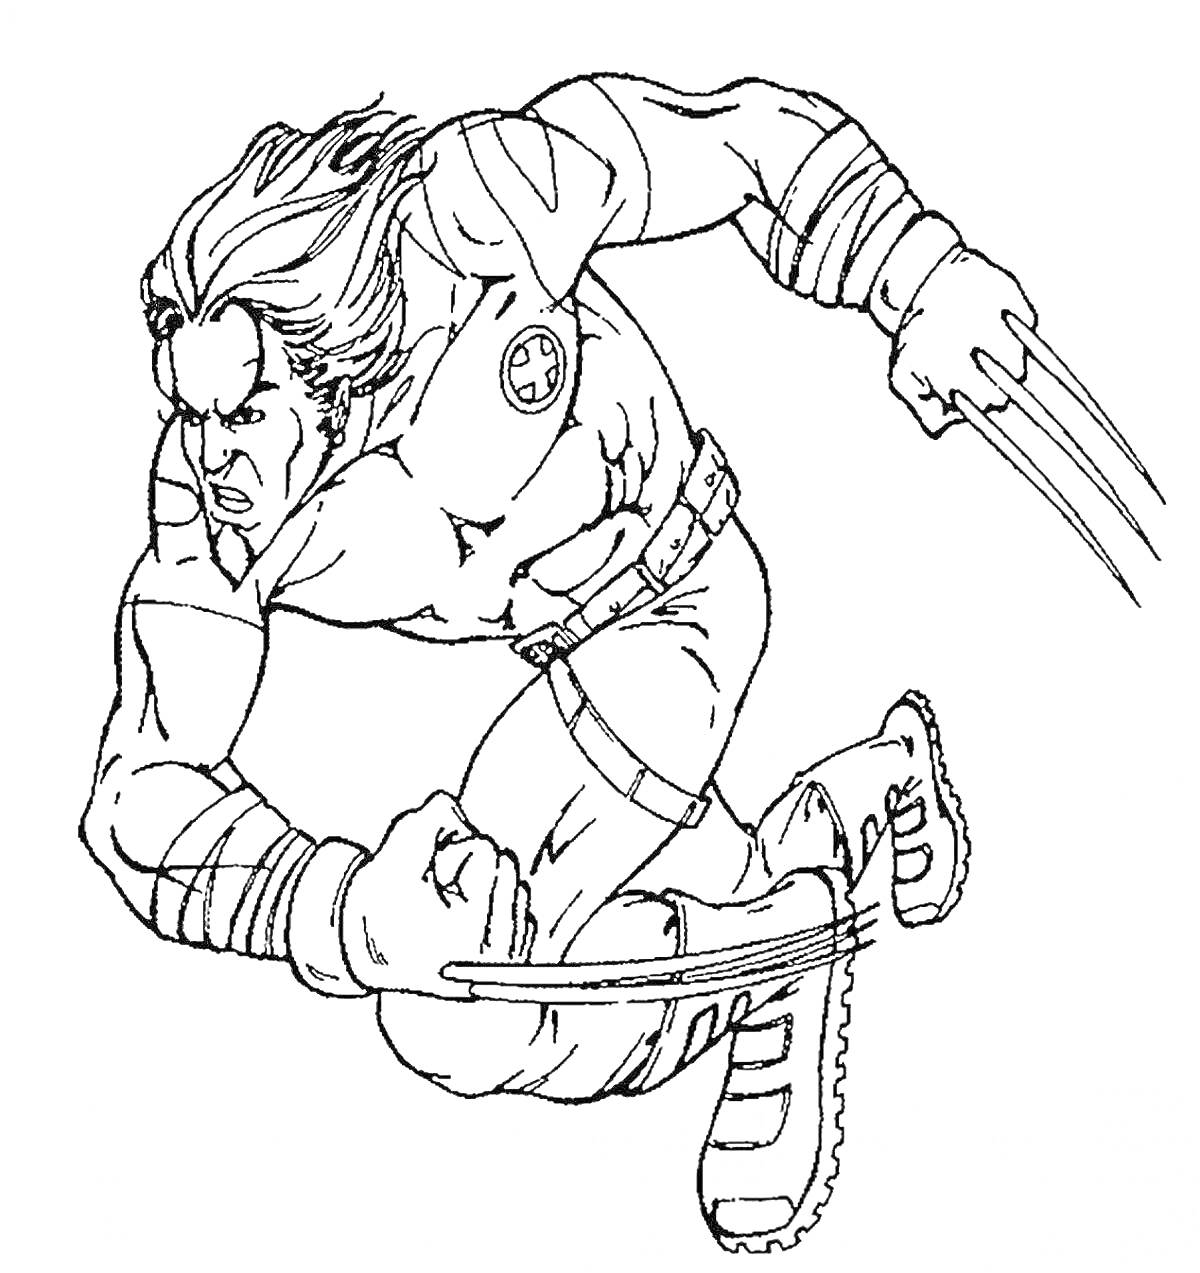 Раскраска Воин с когтями, в прыжке, с длинными волосами, с повязкой на руке, в костюме с ремнем